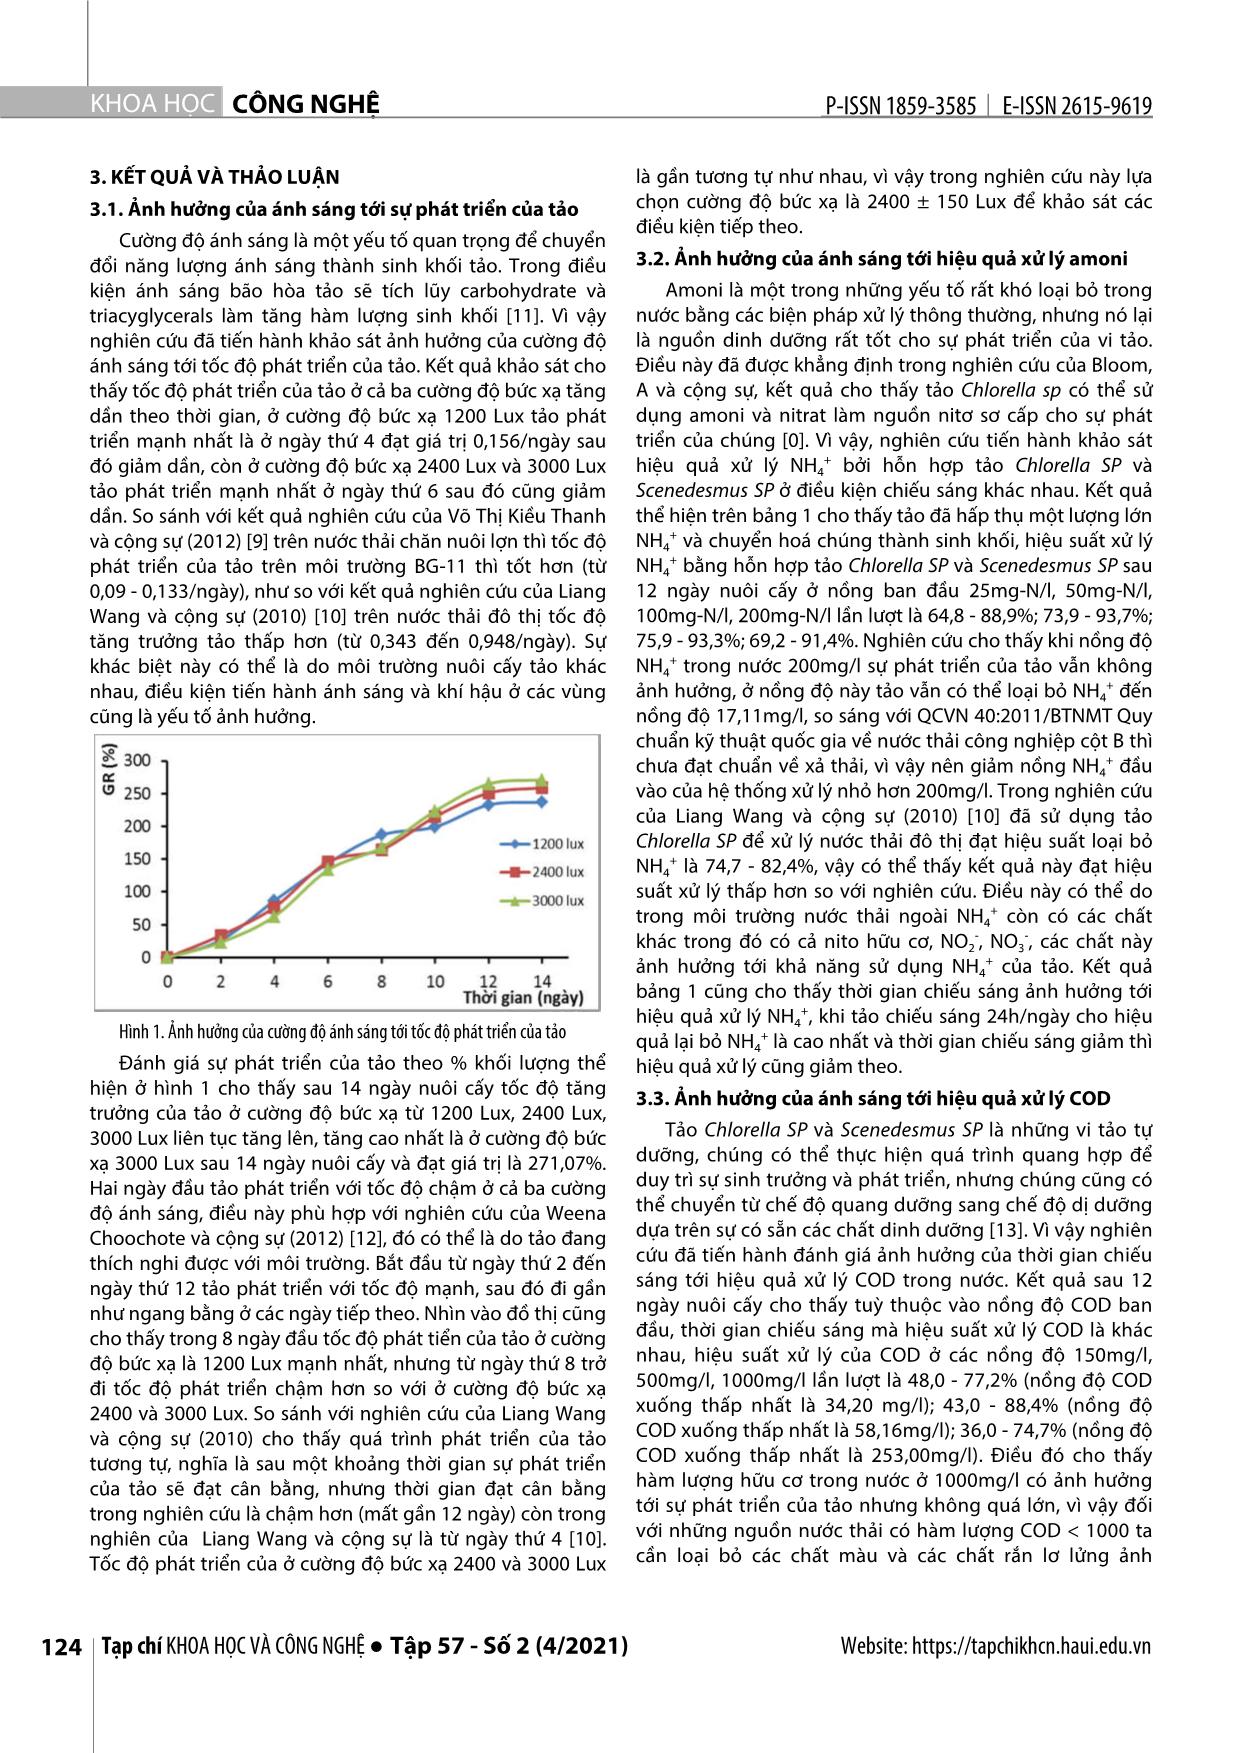 Nghiên cứu ảnh hưởng của ánh sáng tới hiệu quả xử lý NH₄⁺ và cod bằng tảo Chlorella SP và Scenedesmus SP trang 3